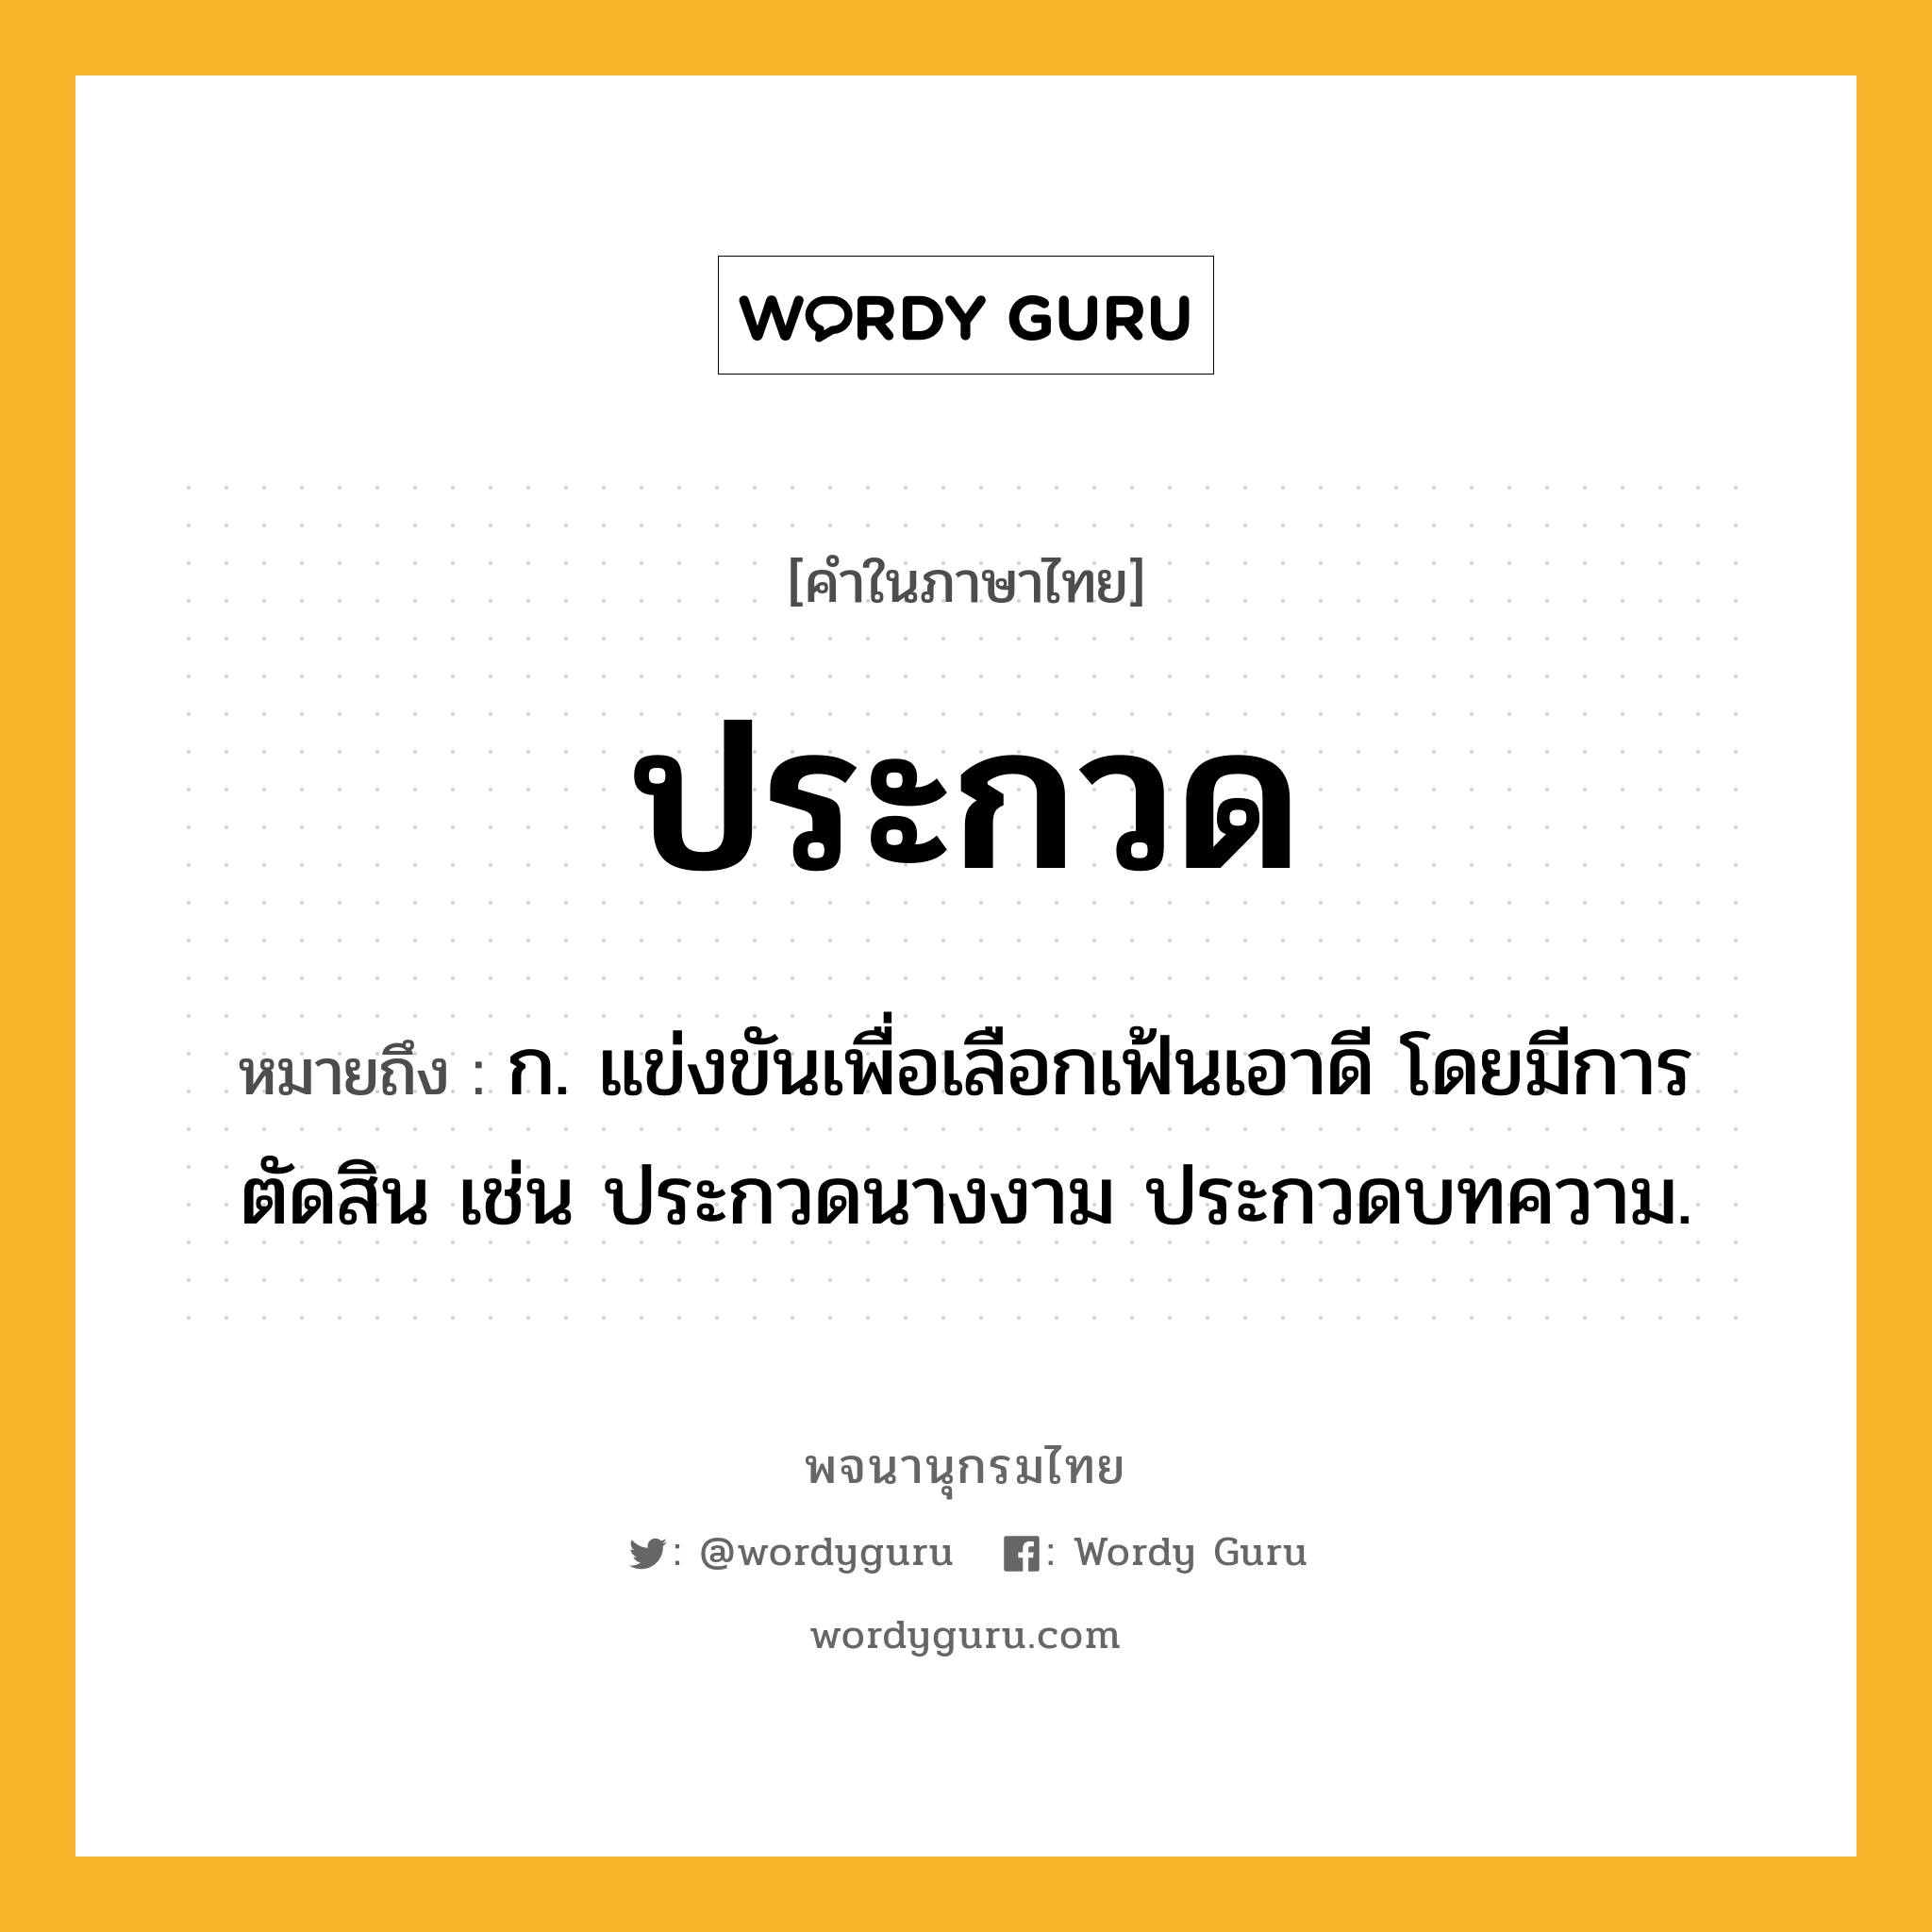 ประกวด ความหมาย หมายถึงอะไร?, คำในภาษาไทย ประกวด หมายถึง ก. แข่งขันเพื่อเลือกเฟ้นเอาดี โดยมีการตัดสิน เช่น ประกวดนางงาม ประกวดบทความ.